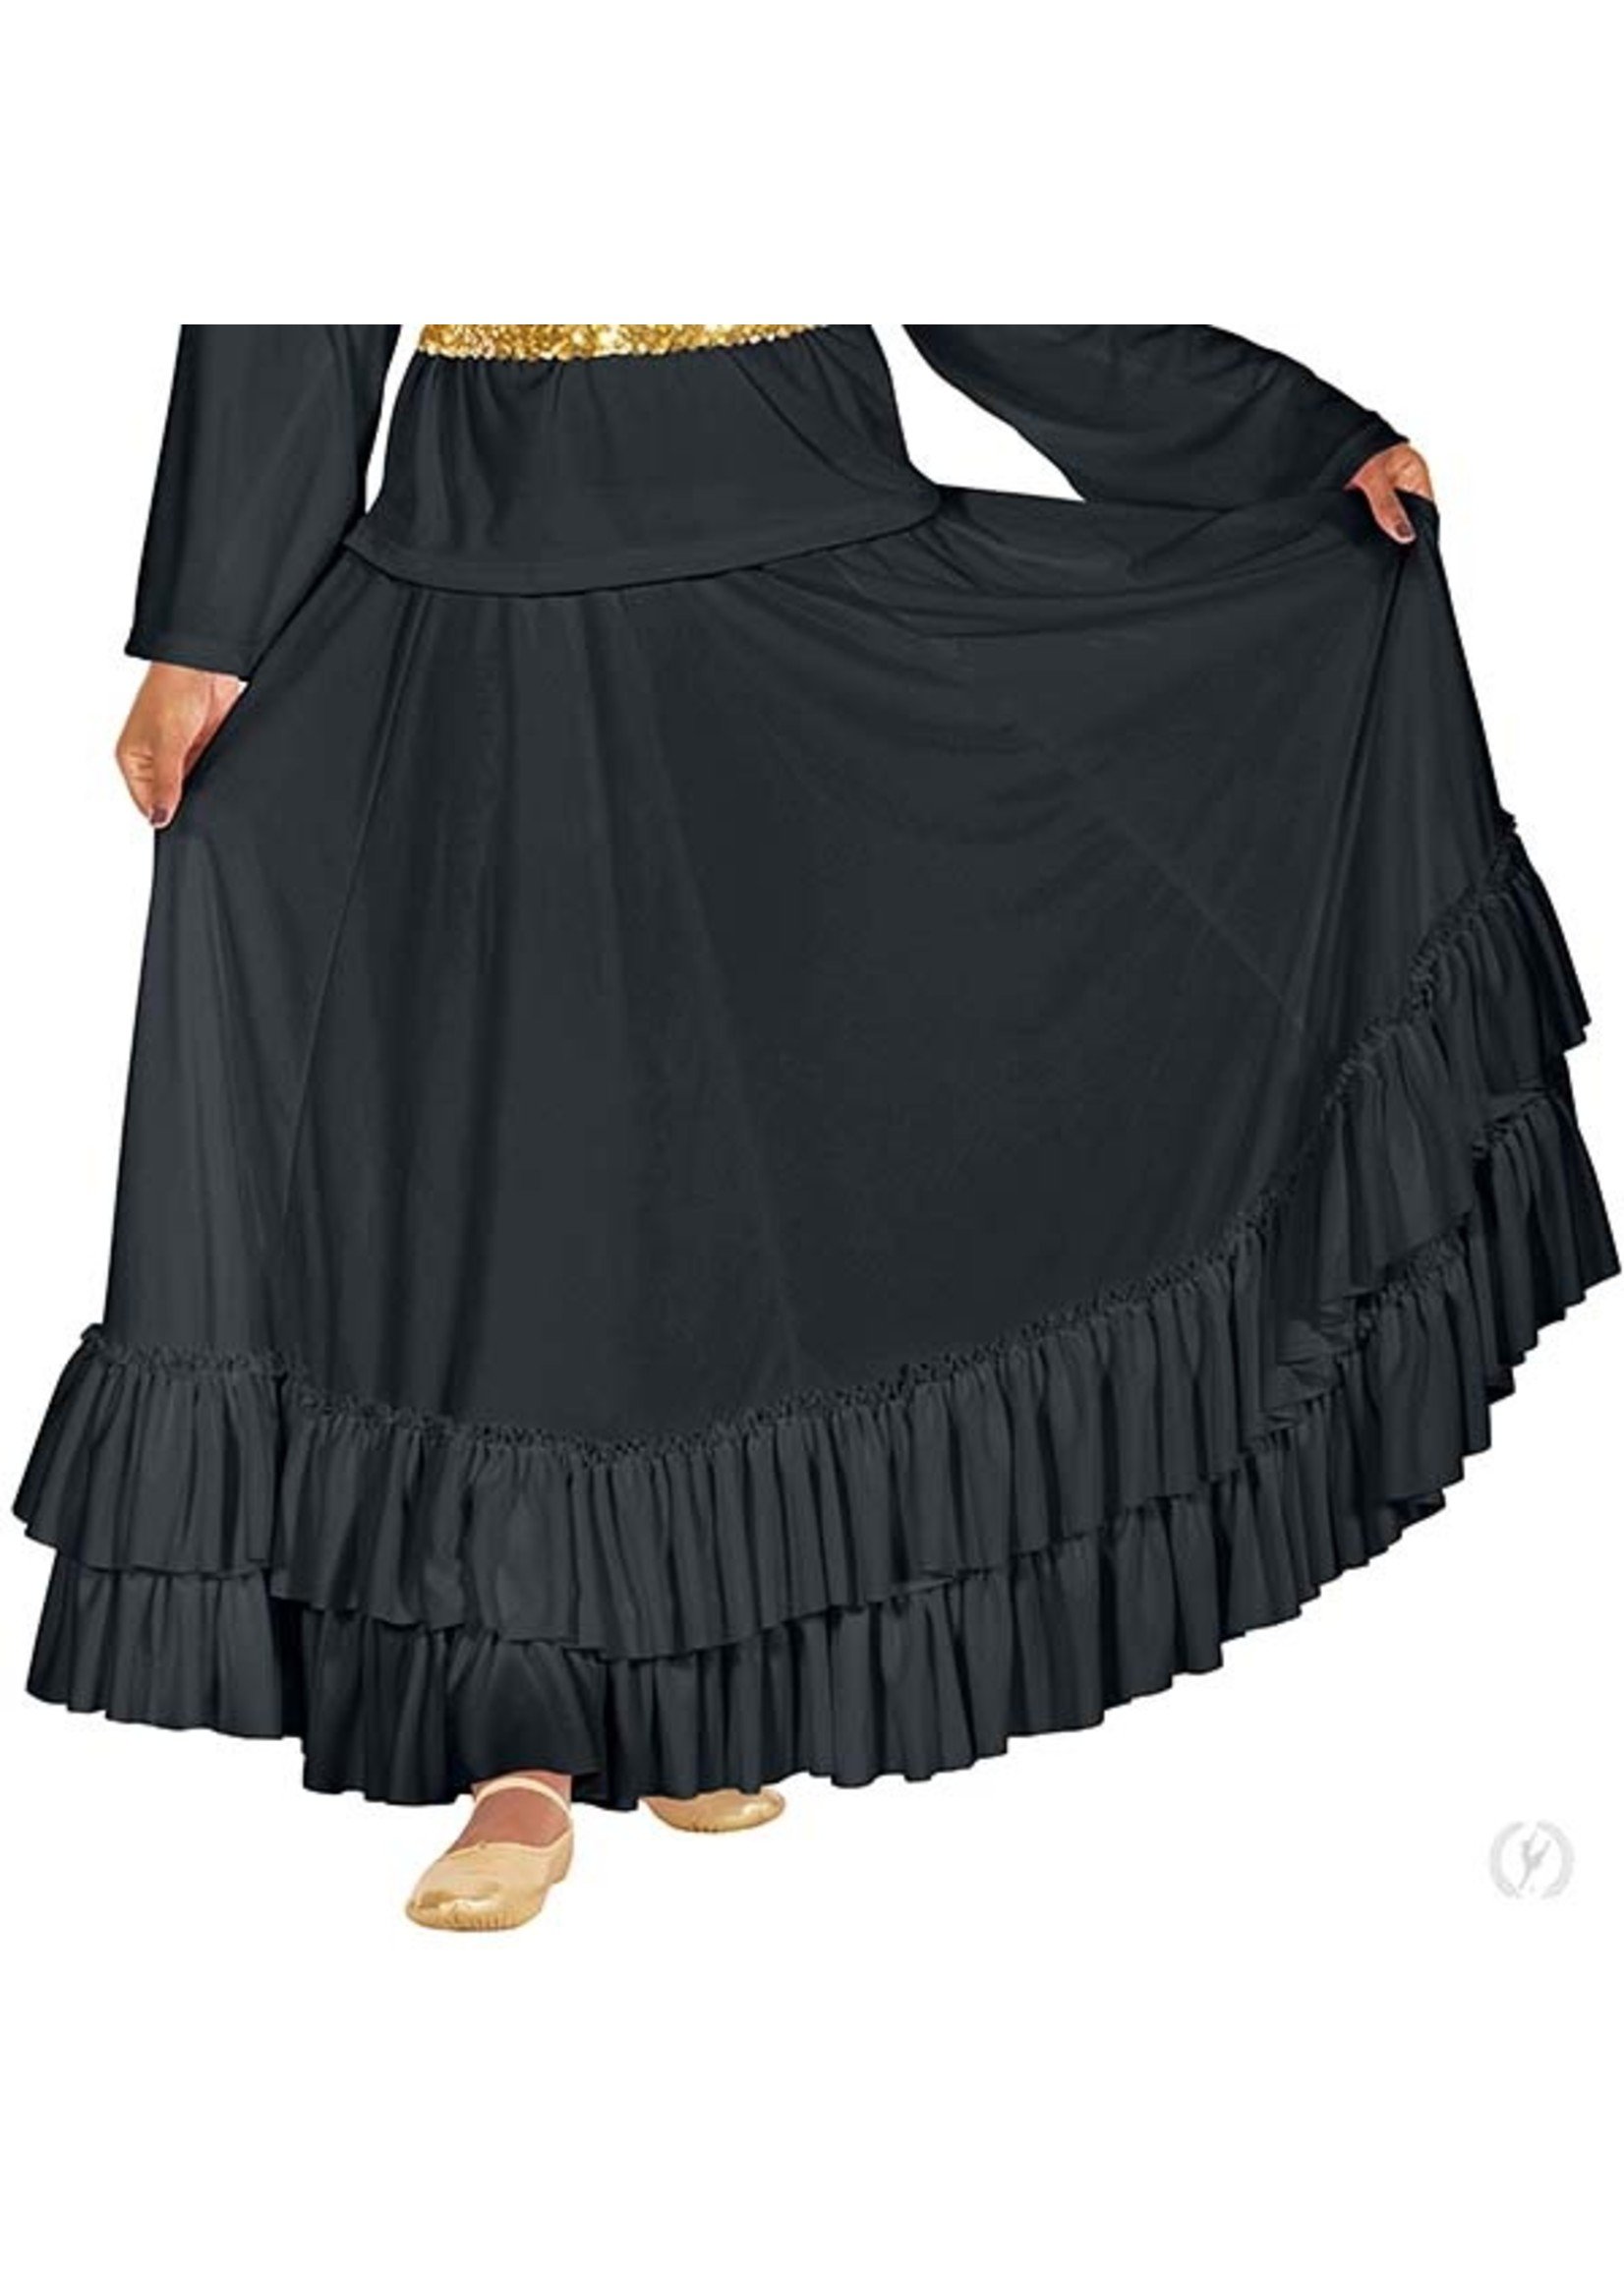 ET Revelation Full Length Praise Skirt with Double Ruffle Bottom